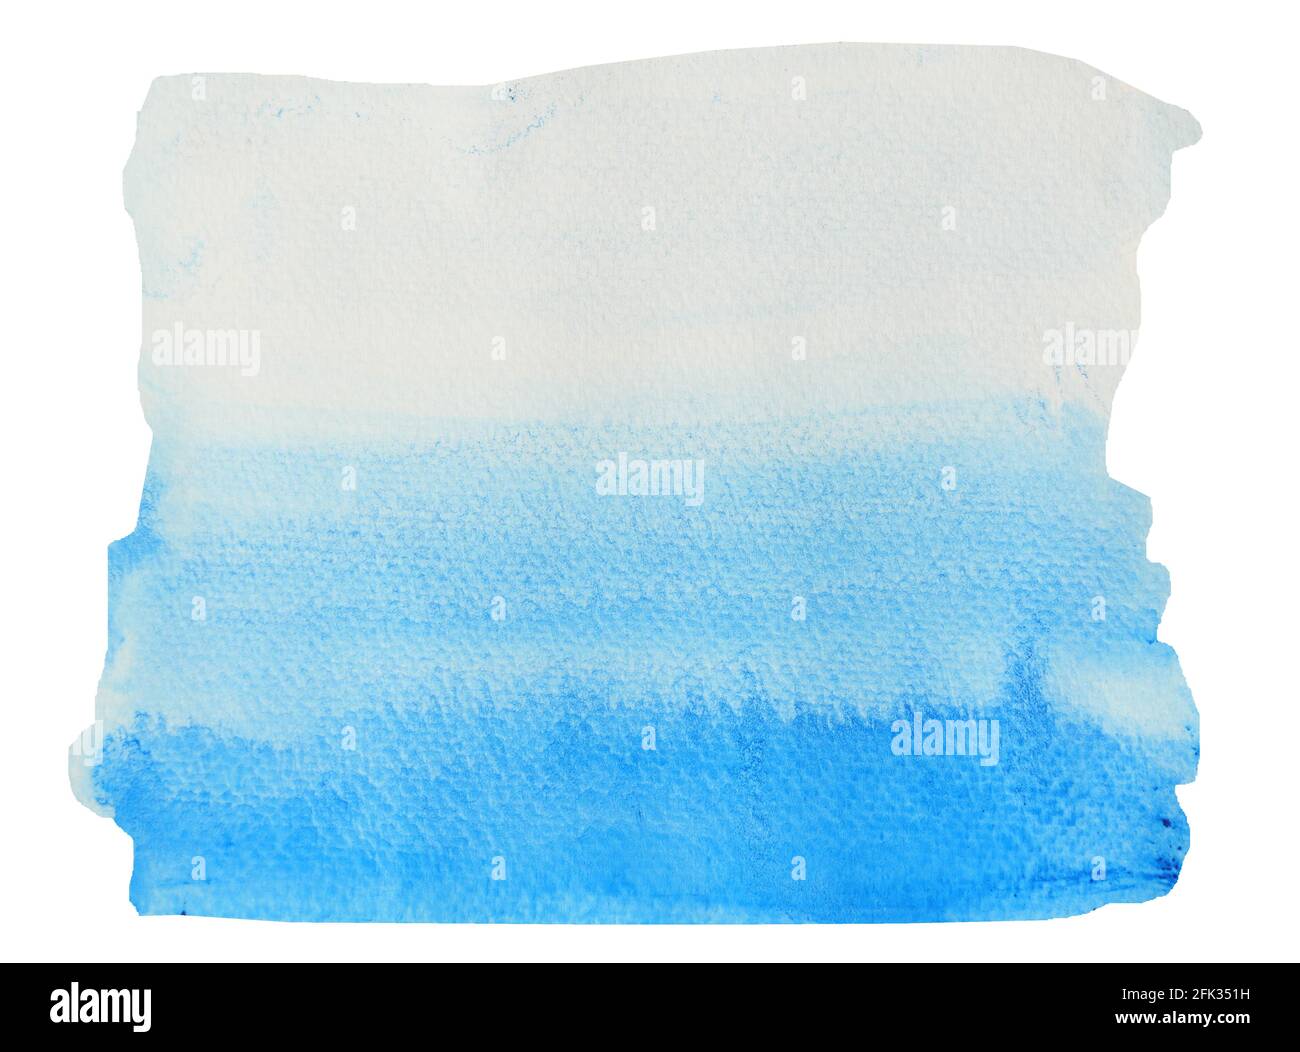 Farbverlauf von dunkel zu hell blaue Flecken auf weiße Oberfläche,  Illustration abstrakt und hellen Hintergrund von Hand zeichnen Aquarell auf  Papier Stockfotografie - Alamy